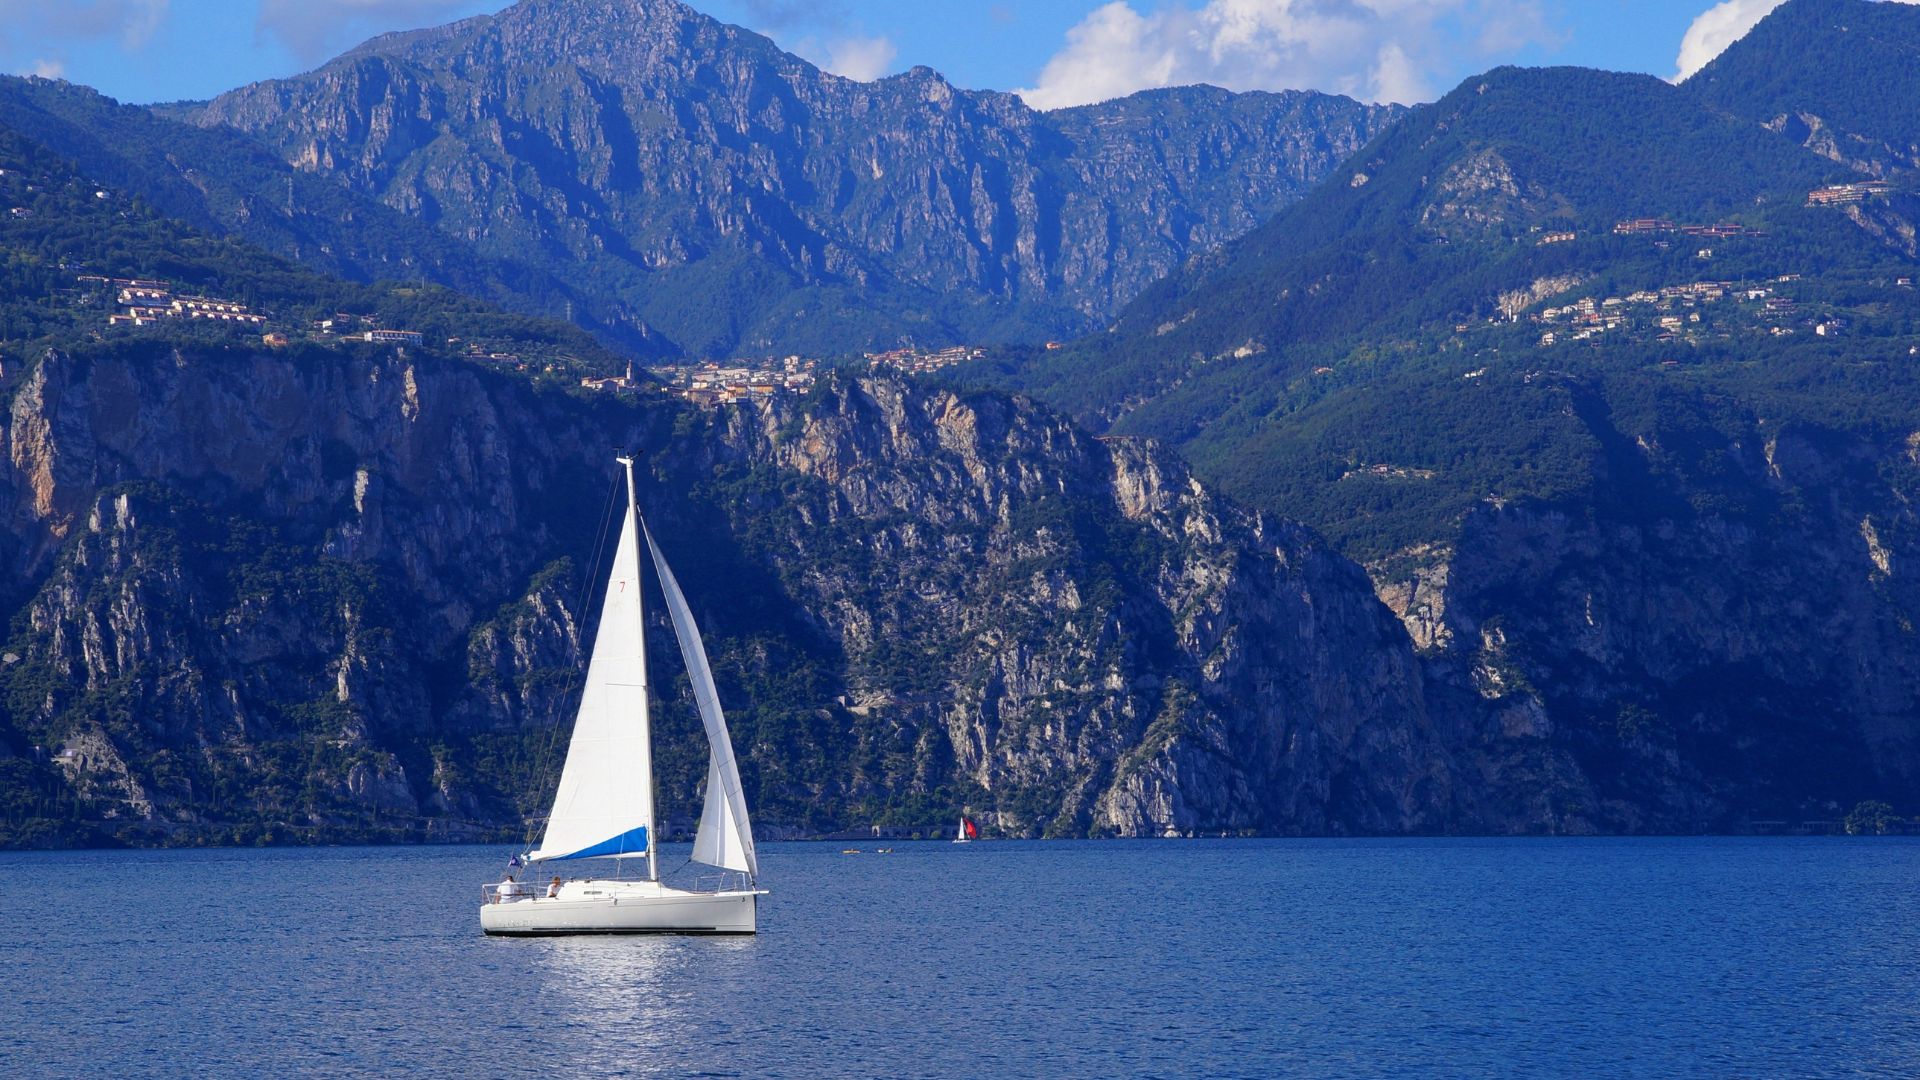 Consigli per un weekend perfetto al lago di Garda con la tua dolce metà